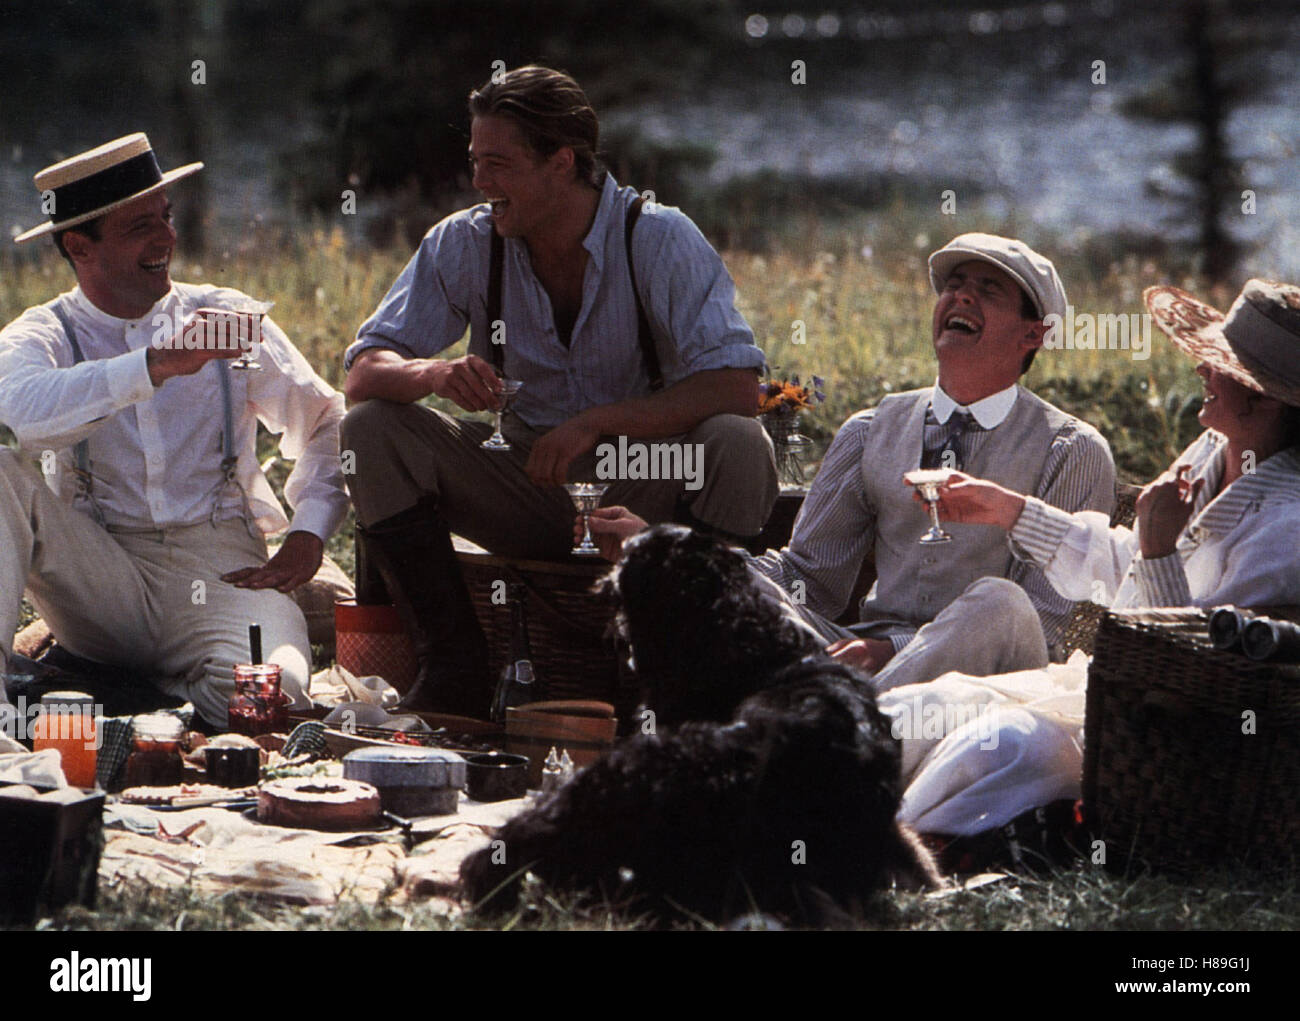 Legenden der Leidenschaft, (LEGENDS OF THE FALL) USA 1994, Regie: Edward Zwick, AIDAN QUINN, BRAD PITT, HENRY THOMAS, Stichwort: Picknick Stock Photo